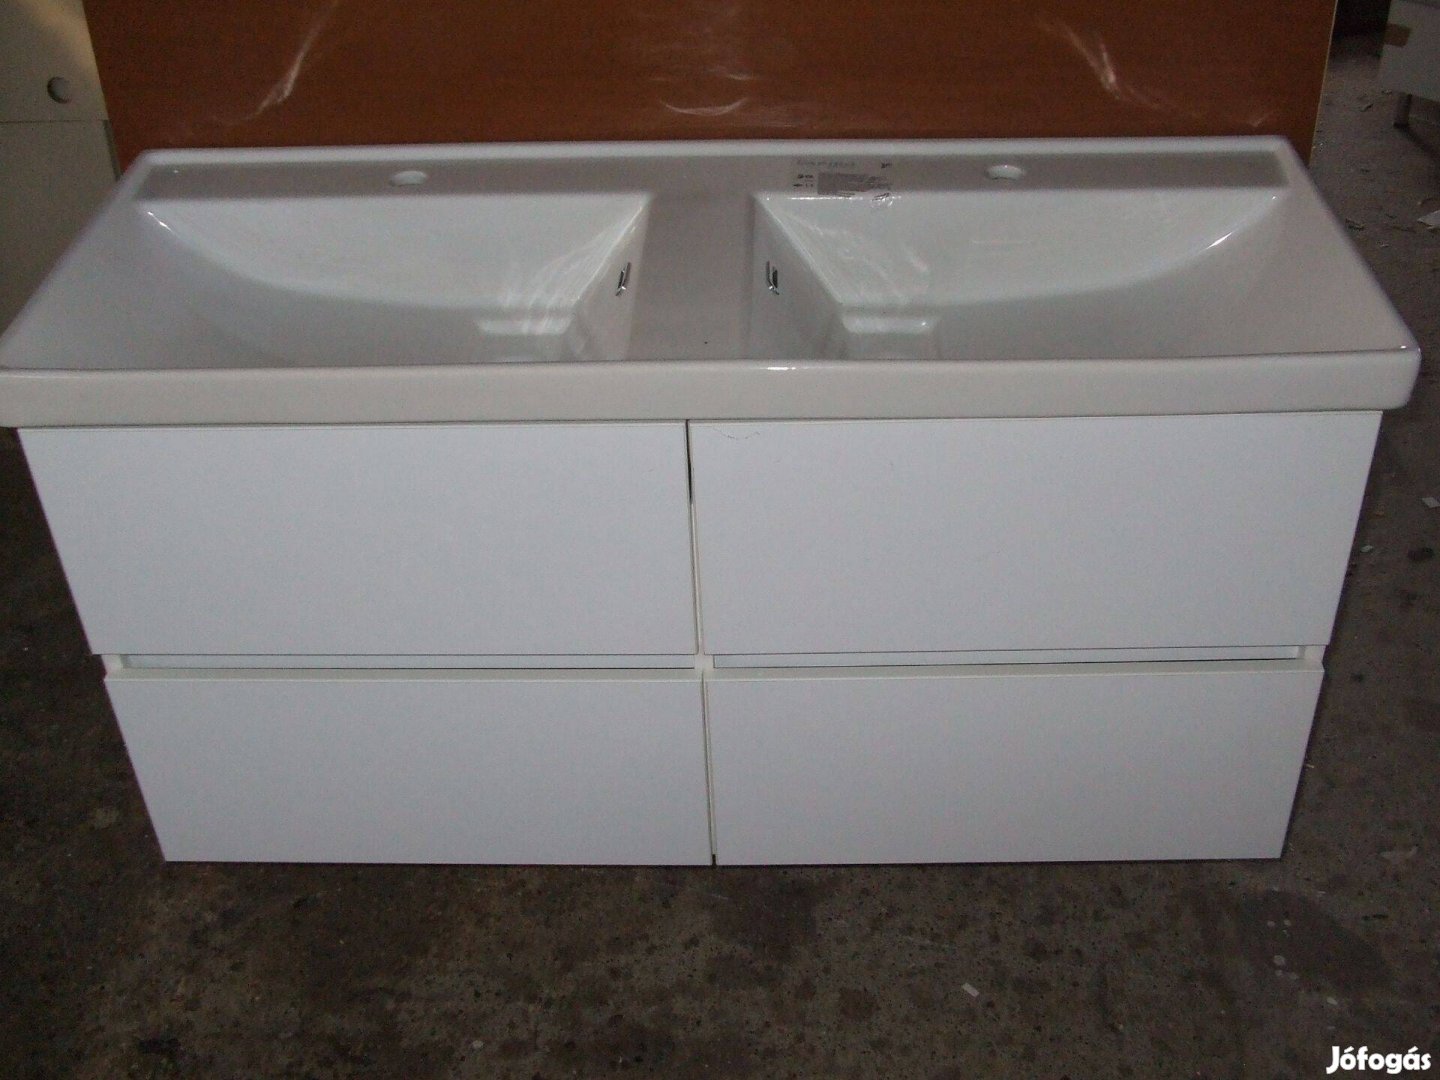 Új dupla mosdószekrény magasfényű fehér 120 cm 4F falra szerelt bútor